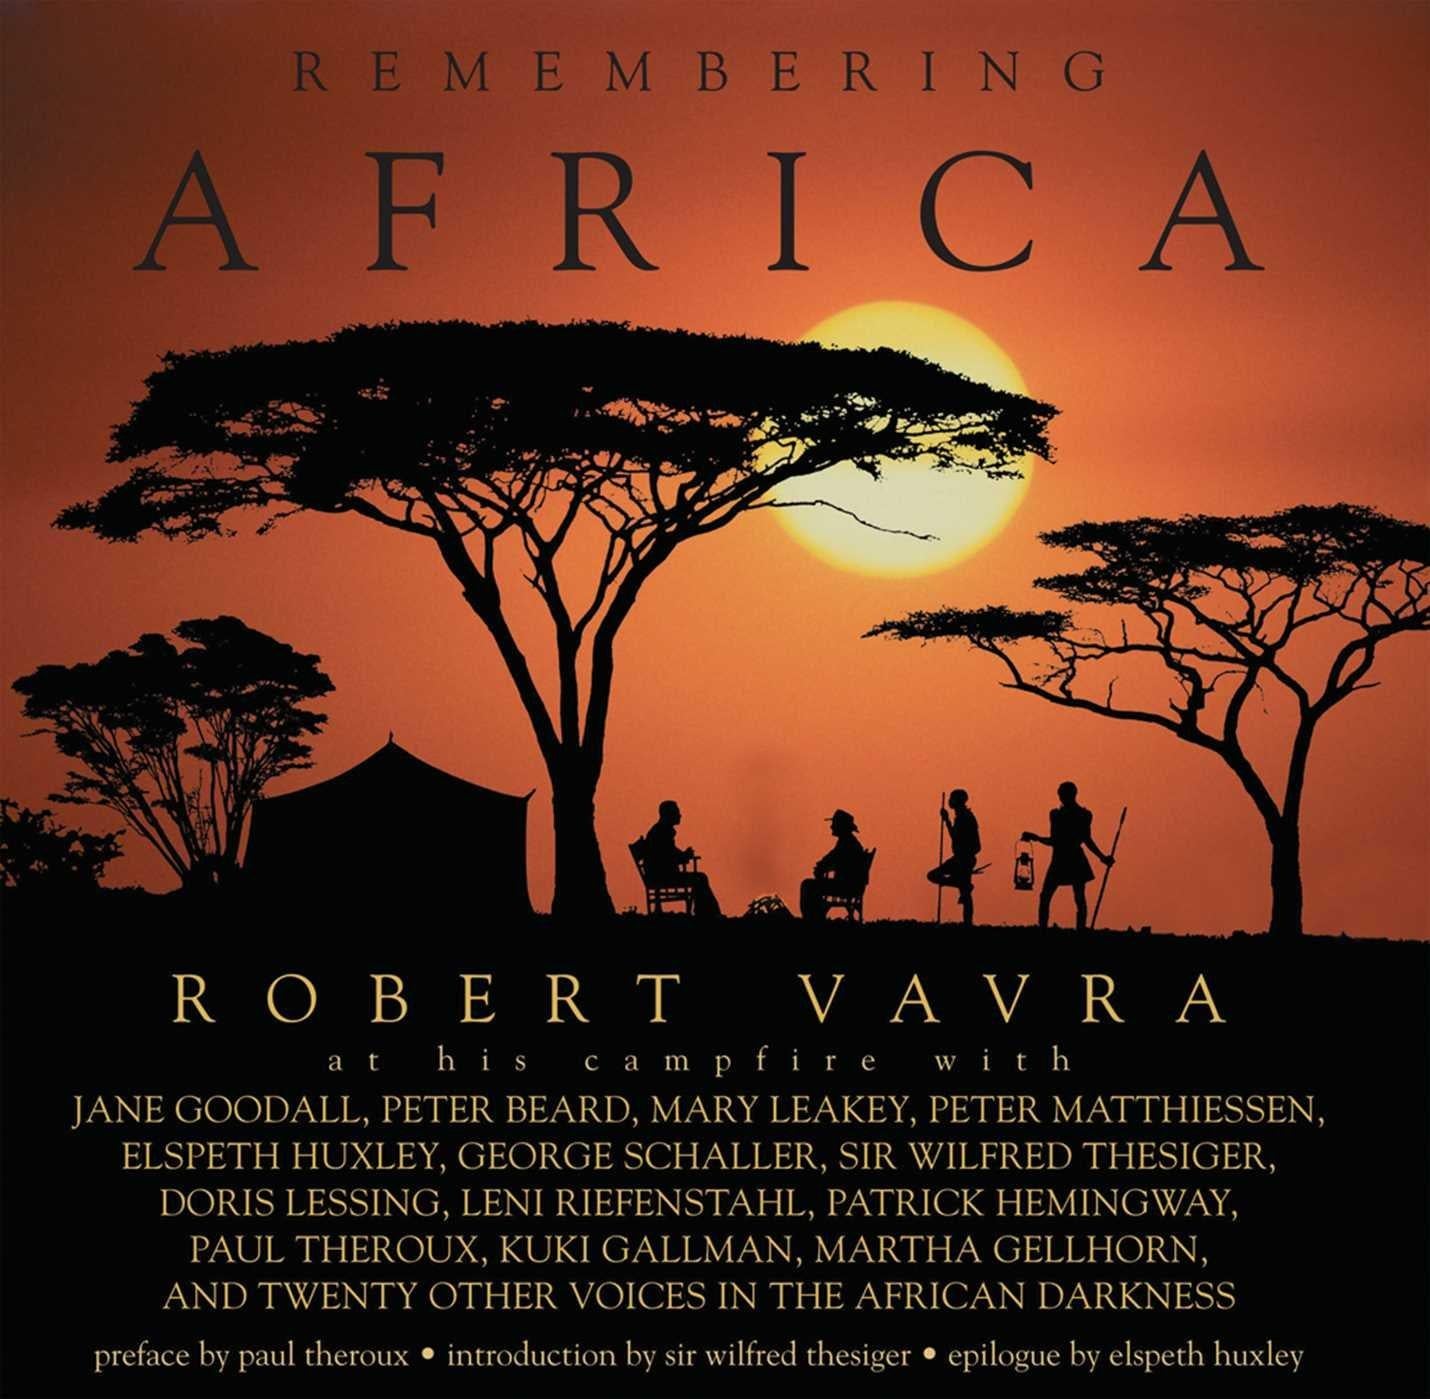 Remembering Africa par Robert Vavra livre relié.
Grand livre à couverture rigide - par le photographe Robert Vavra 624 pages.
Se souvenir de l'Afrique est une évocation magique du continent d'antan à travers les yeux de 33 explorateurs,